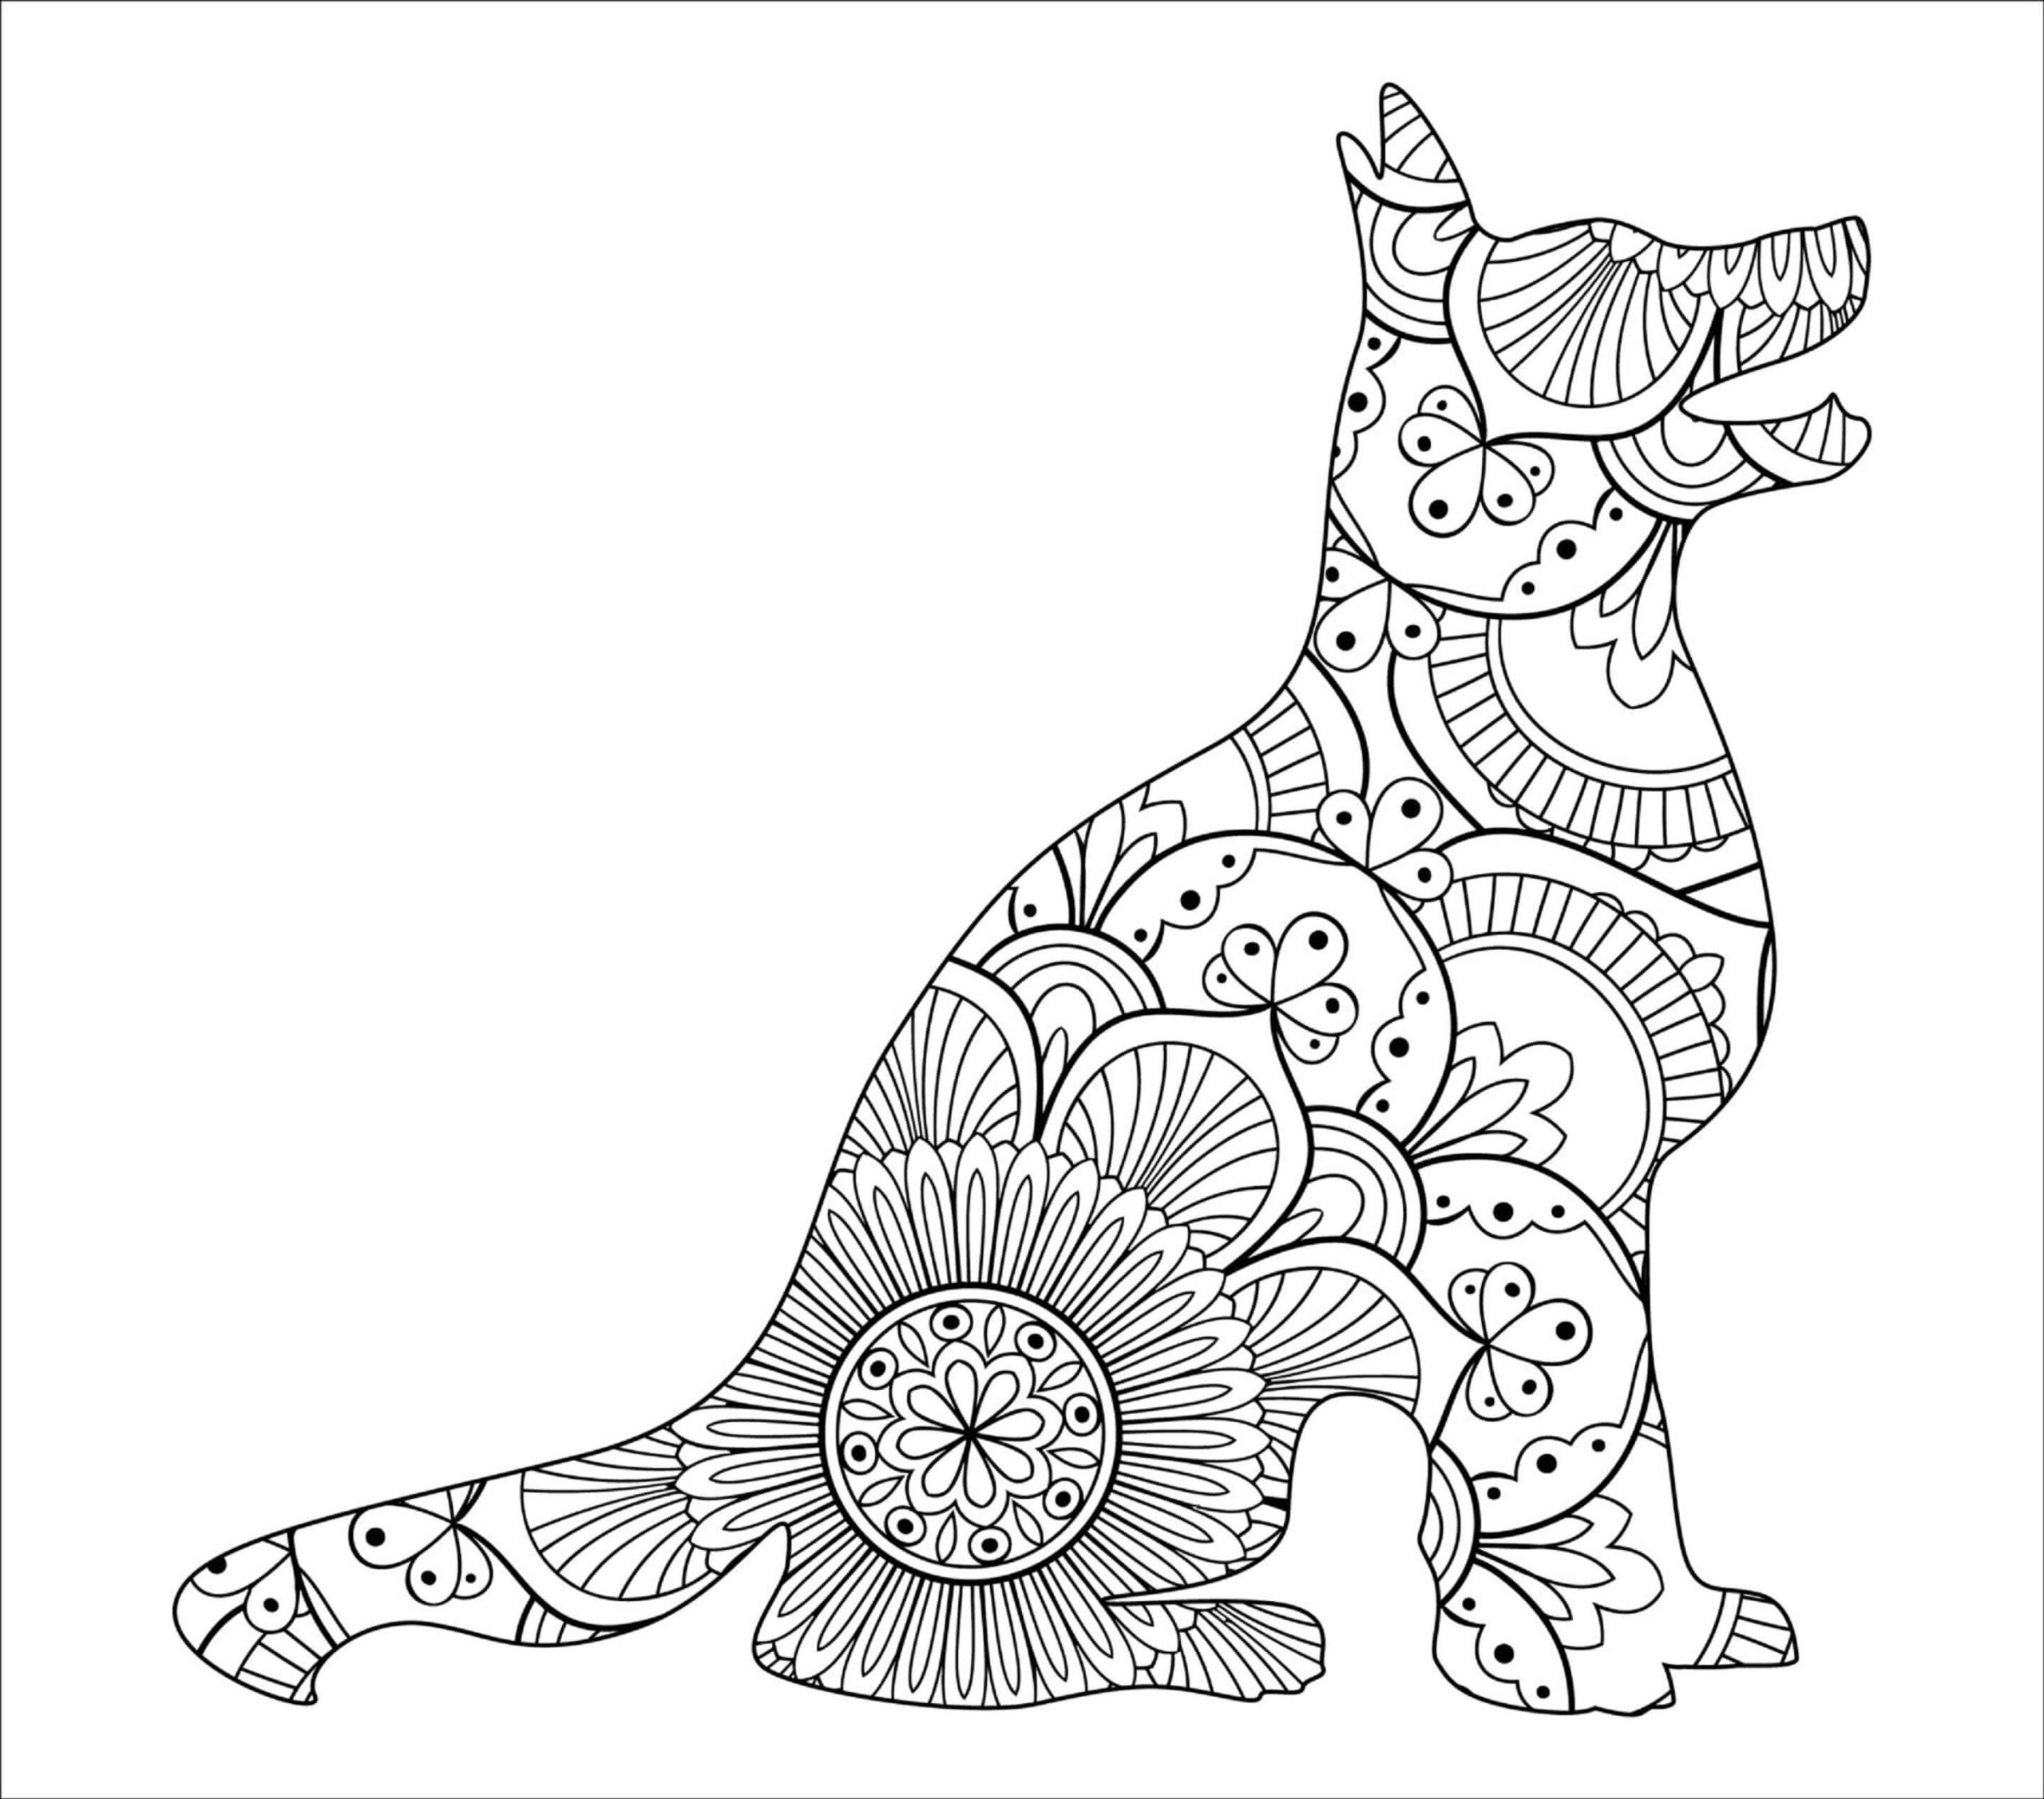 Mandala Dog Coloring Page - Sheet 1 Mandalas